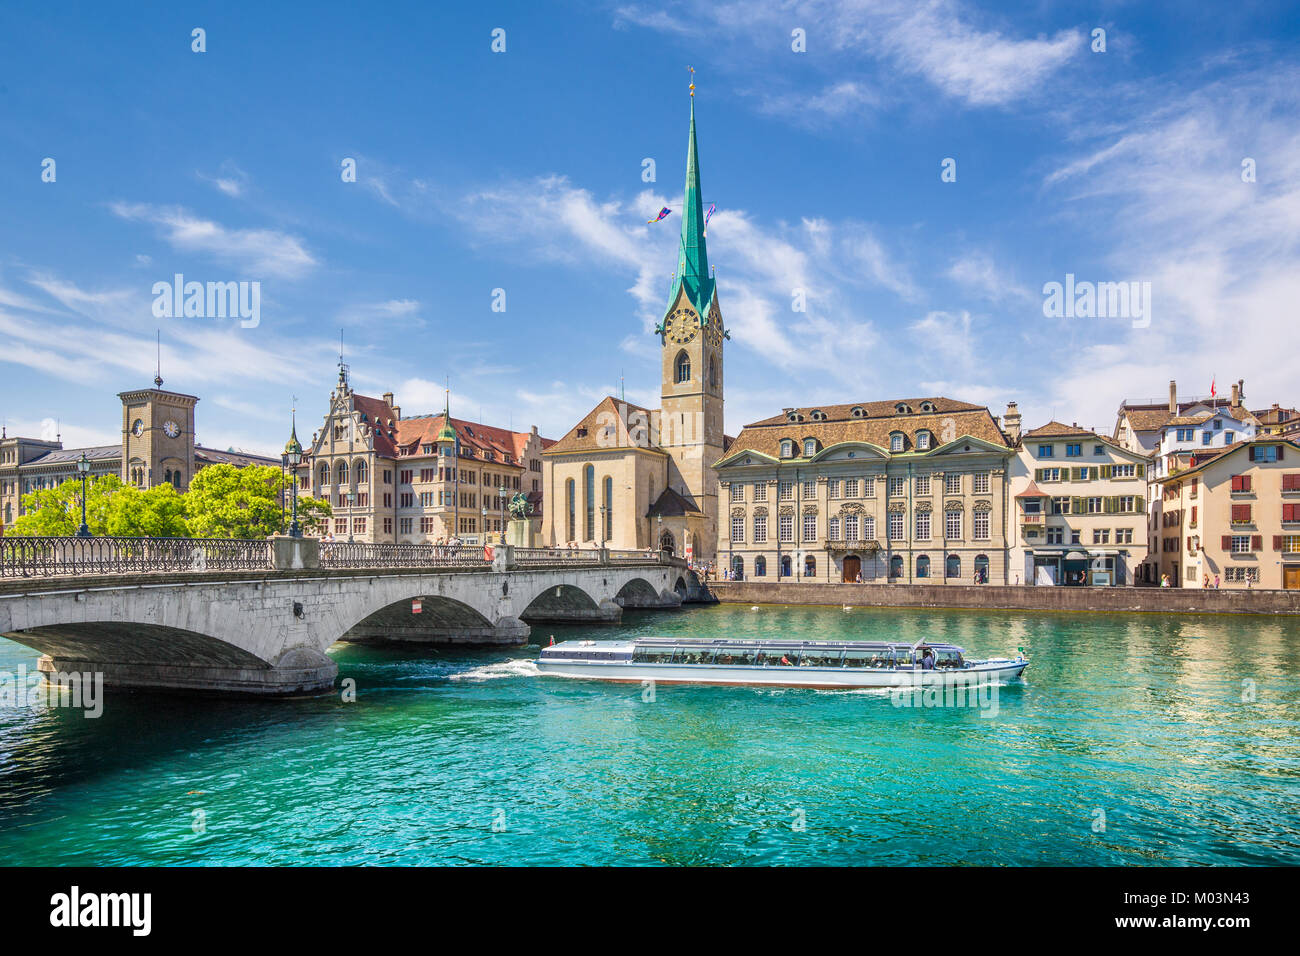 Centre historique de la ville de Zurich avec célèbre église Fraumunster et bateau d'excursion sur la rivière Limmat, Canton de Zurich, Suisse Banque D'Images